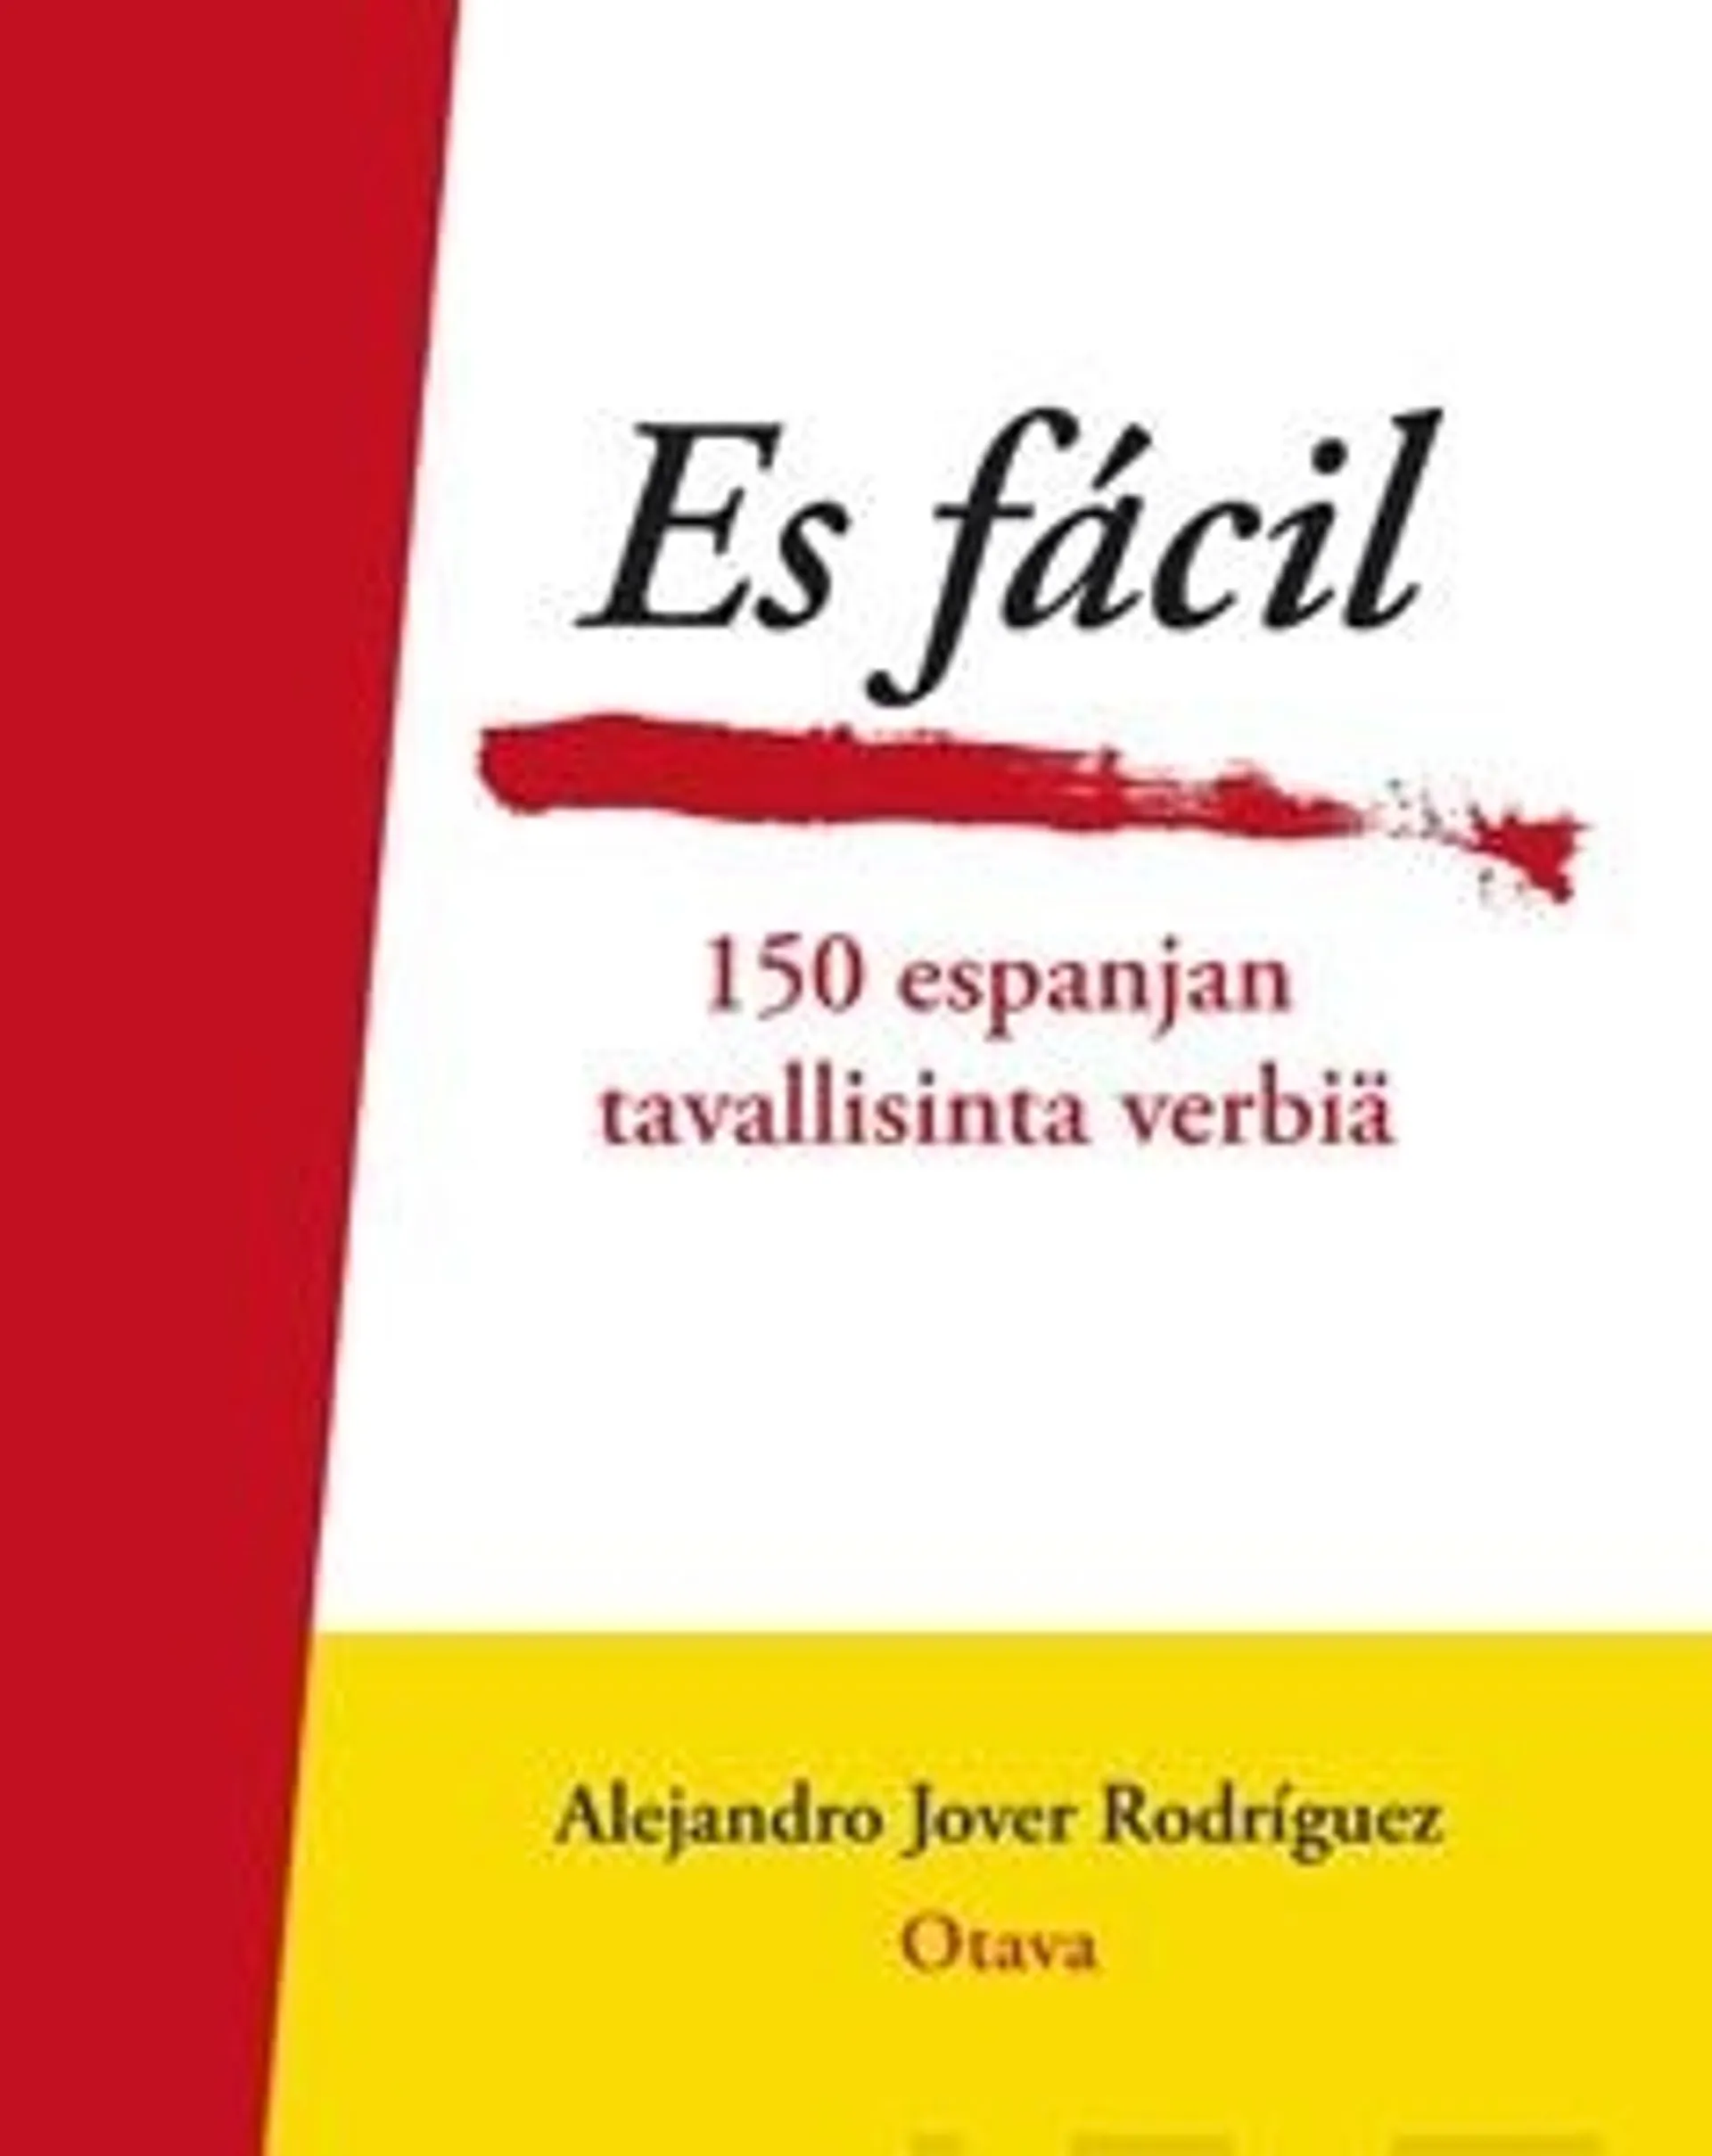 Jover Rodríguez, Es fácil - 150 espanjan tavallisinta verbiä